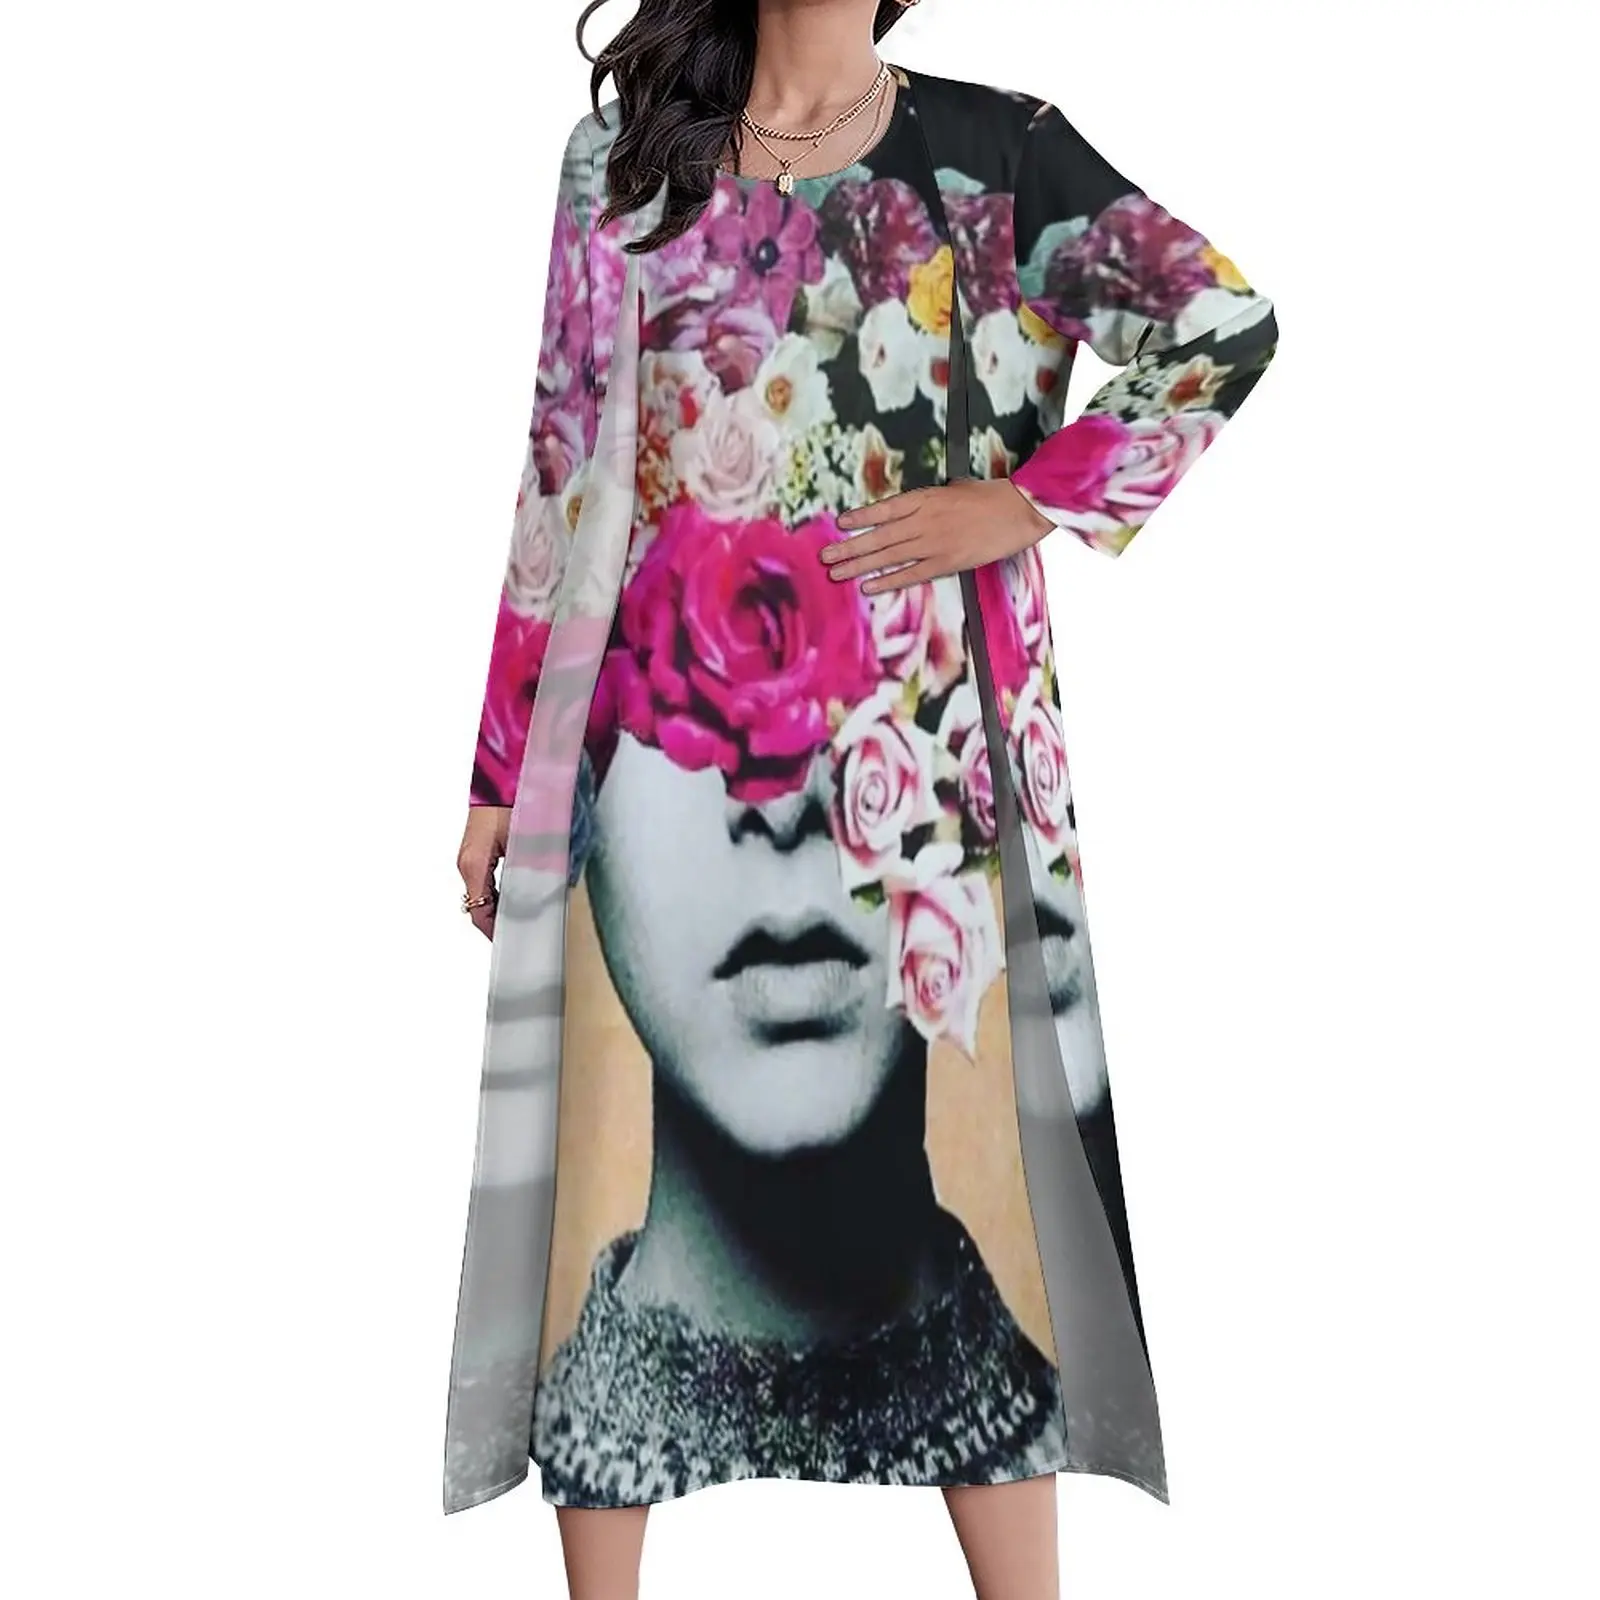 

Женское платье с цветочным принтом, скрытое женское пляжное длинное платье в стиле бохо, женское элегантное платье макси по индивидуальному заказу, 3XL, 4XL, 5XL